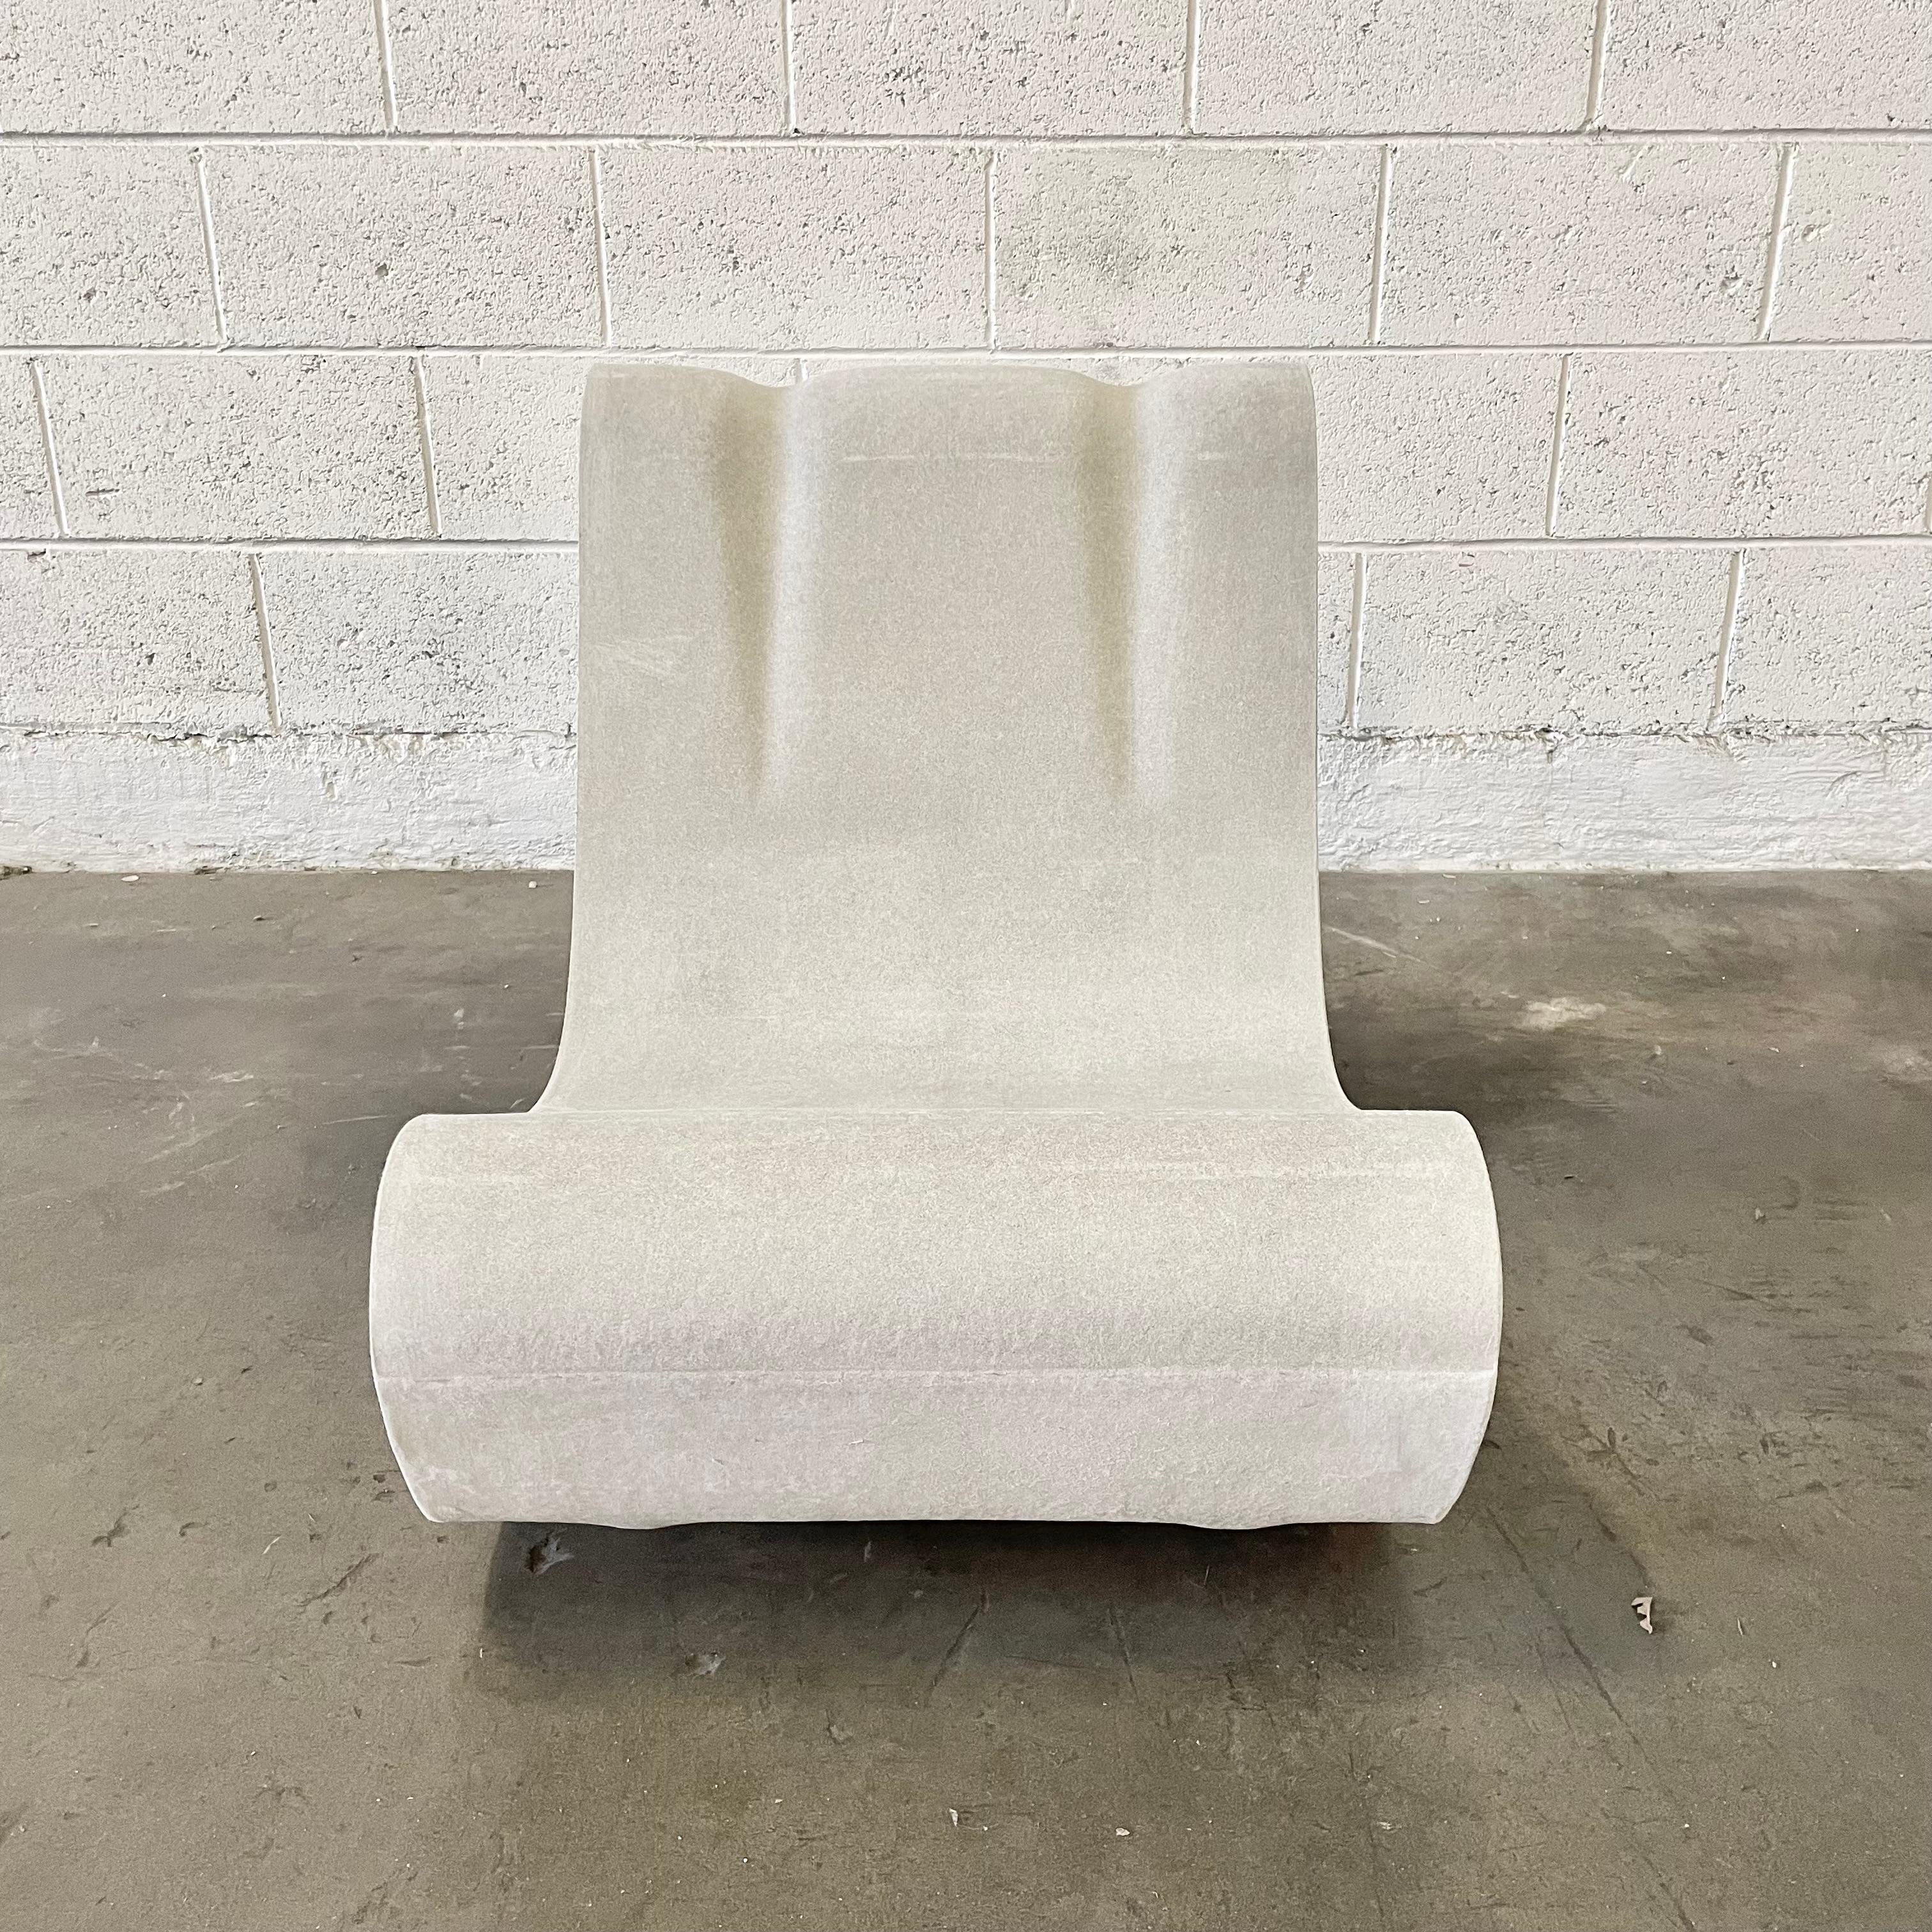 Fantastique chaise en ciment du designer suisse Willy Guhl pour Eternit. État neuf. Mage de la main en Suisse. L'une des chaises les plus emblématiques jamais conçues. Le prix est fixé pour une seule chaise.